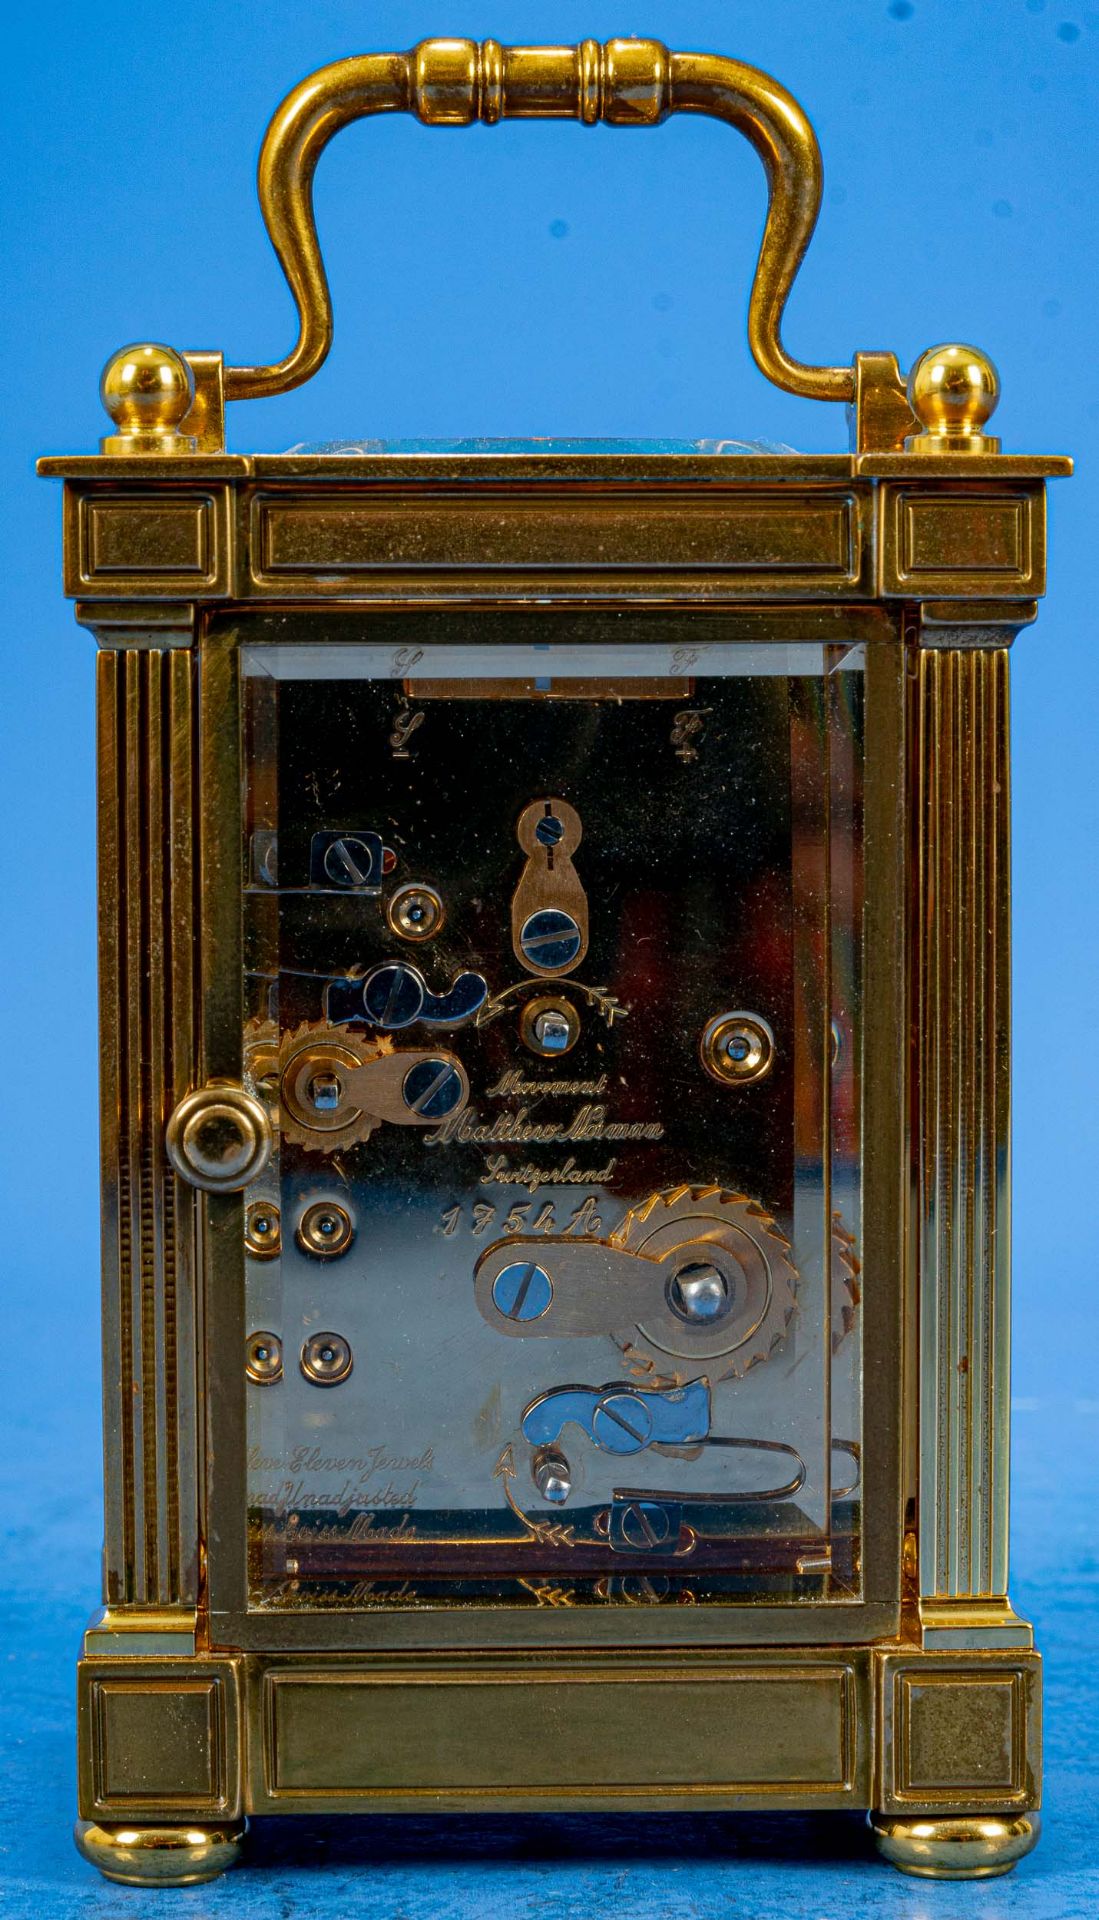 Ältere "MATTHEW NORMAN" Reiseuhr, sog. CARRIAGE CLOCK, rundum verglastes, schweres Messinggehäuse,  - Bild 6 aus 12